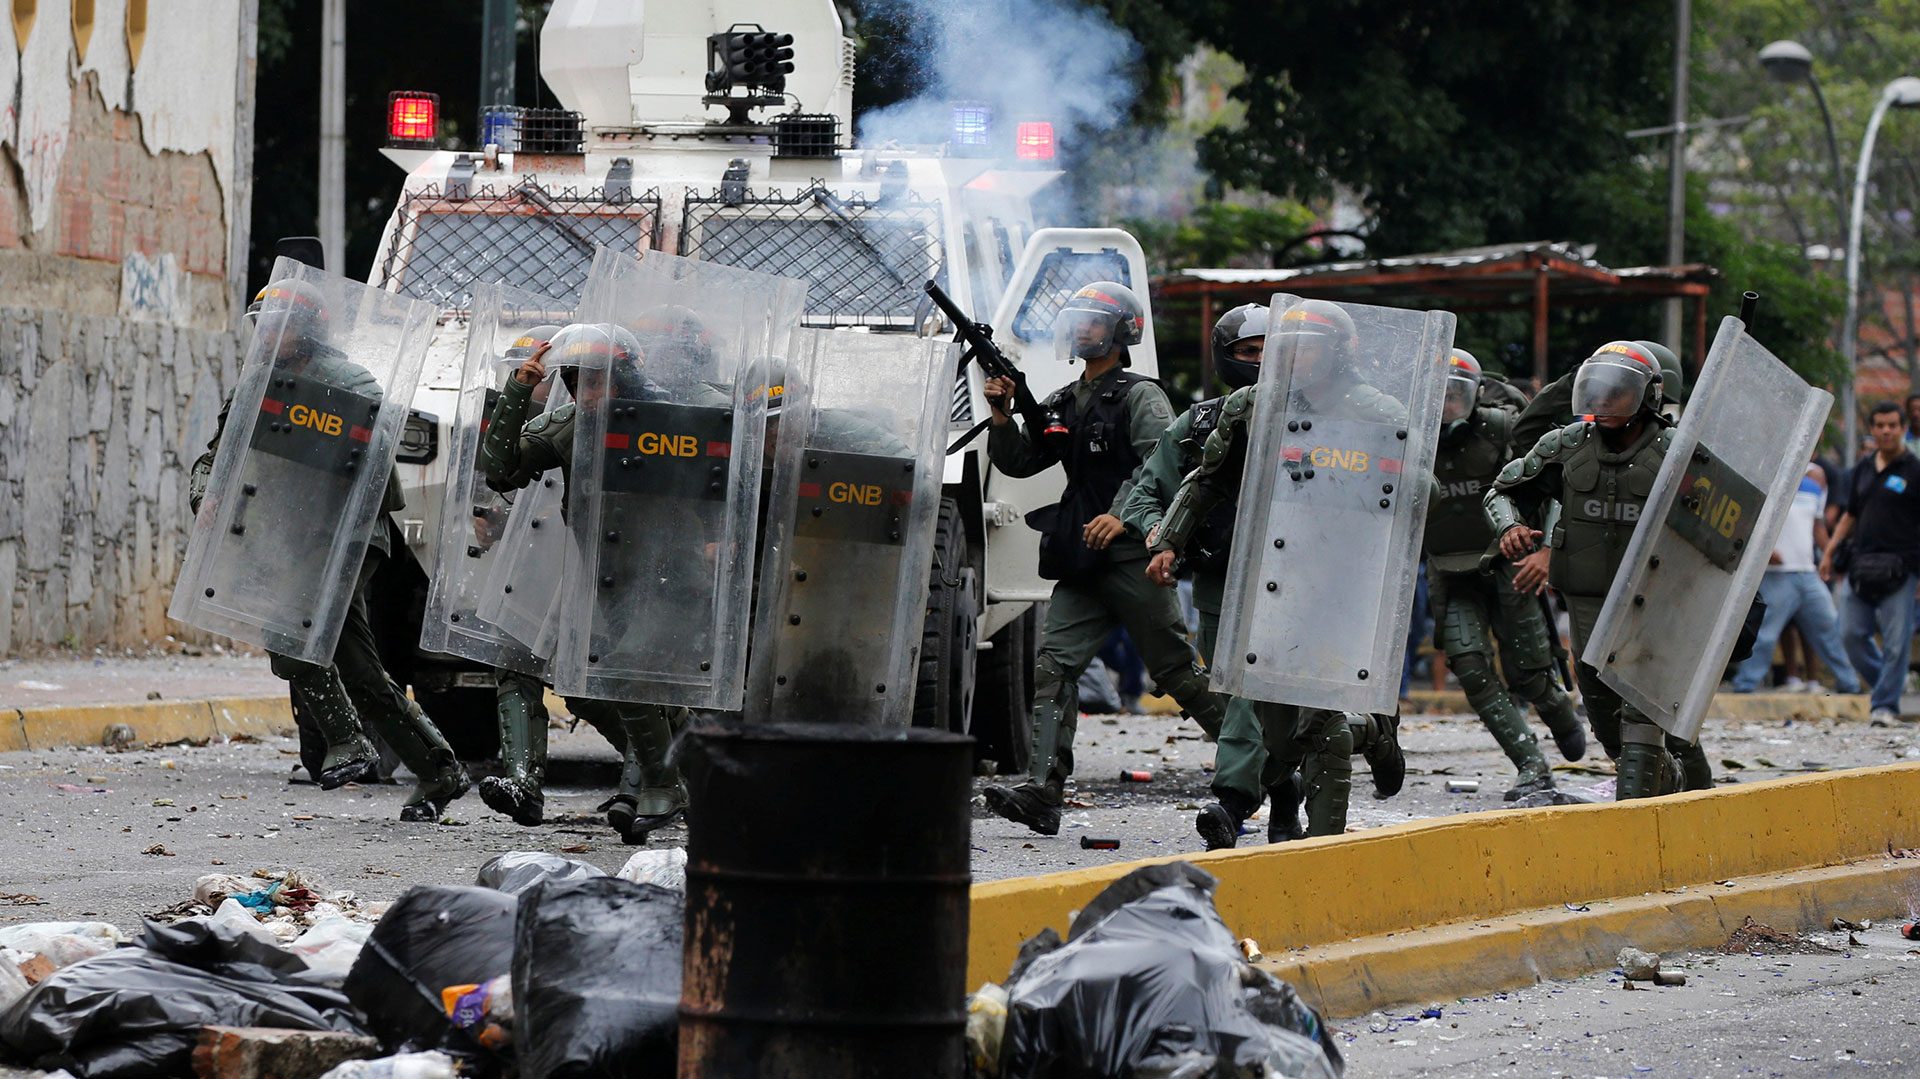 Las fuerzas de seguridad chavistas han incrementado la represión durante la pandemia (REUTERS/Carlos Garcia Rawlins)